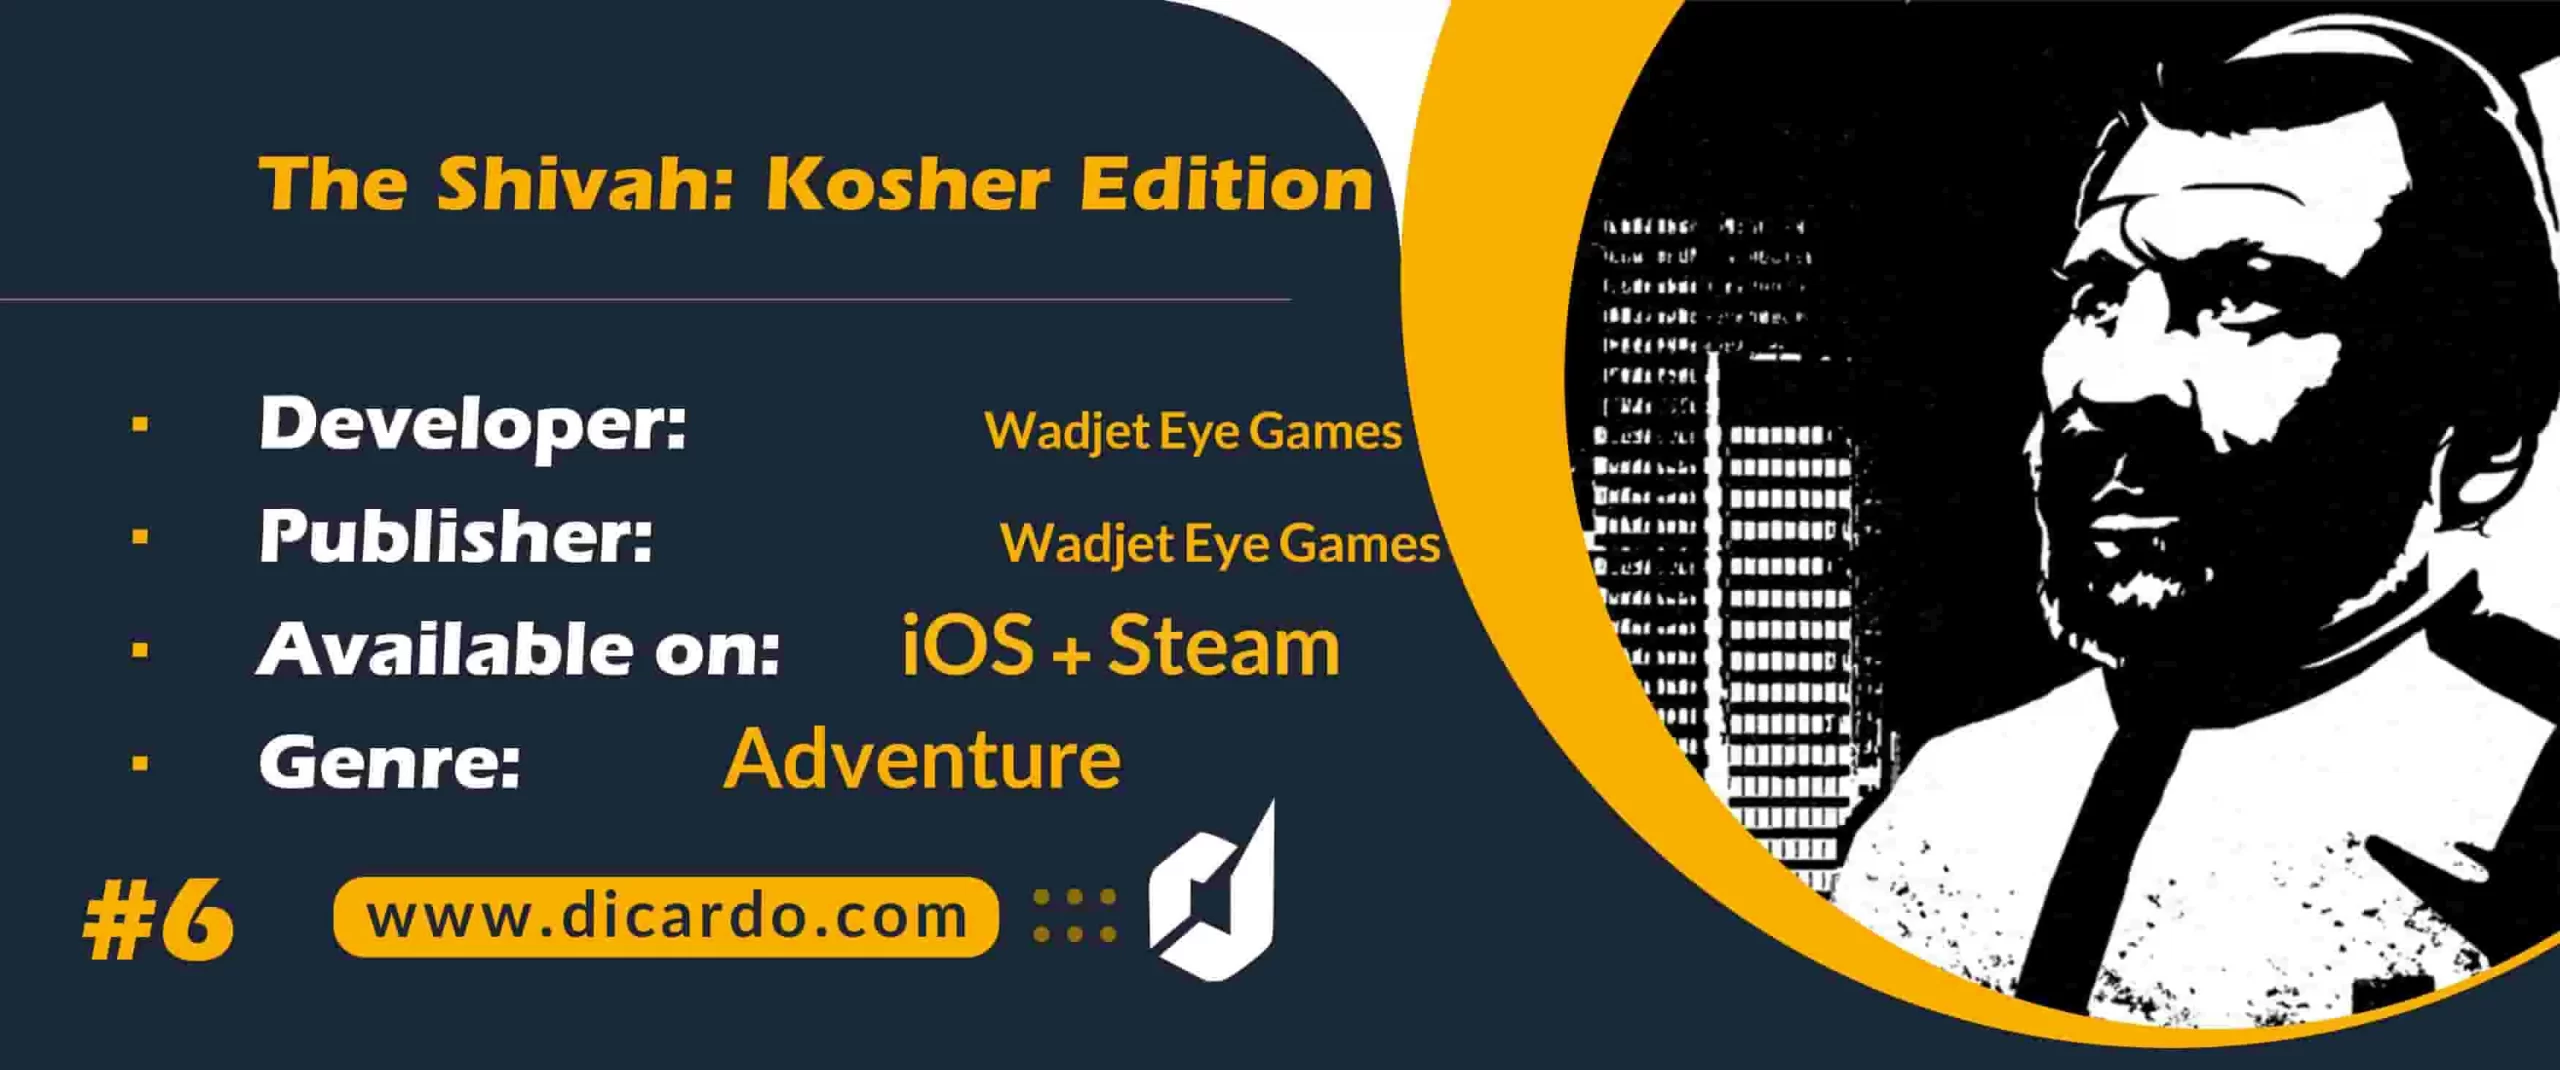 #6 د شیوه: کوشر ادیشن The Shivah: Kosher Edition از بهترین بازیهای پلیسی به دنبال کشف یک راز